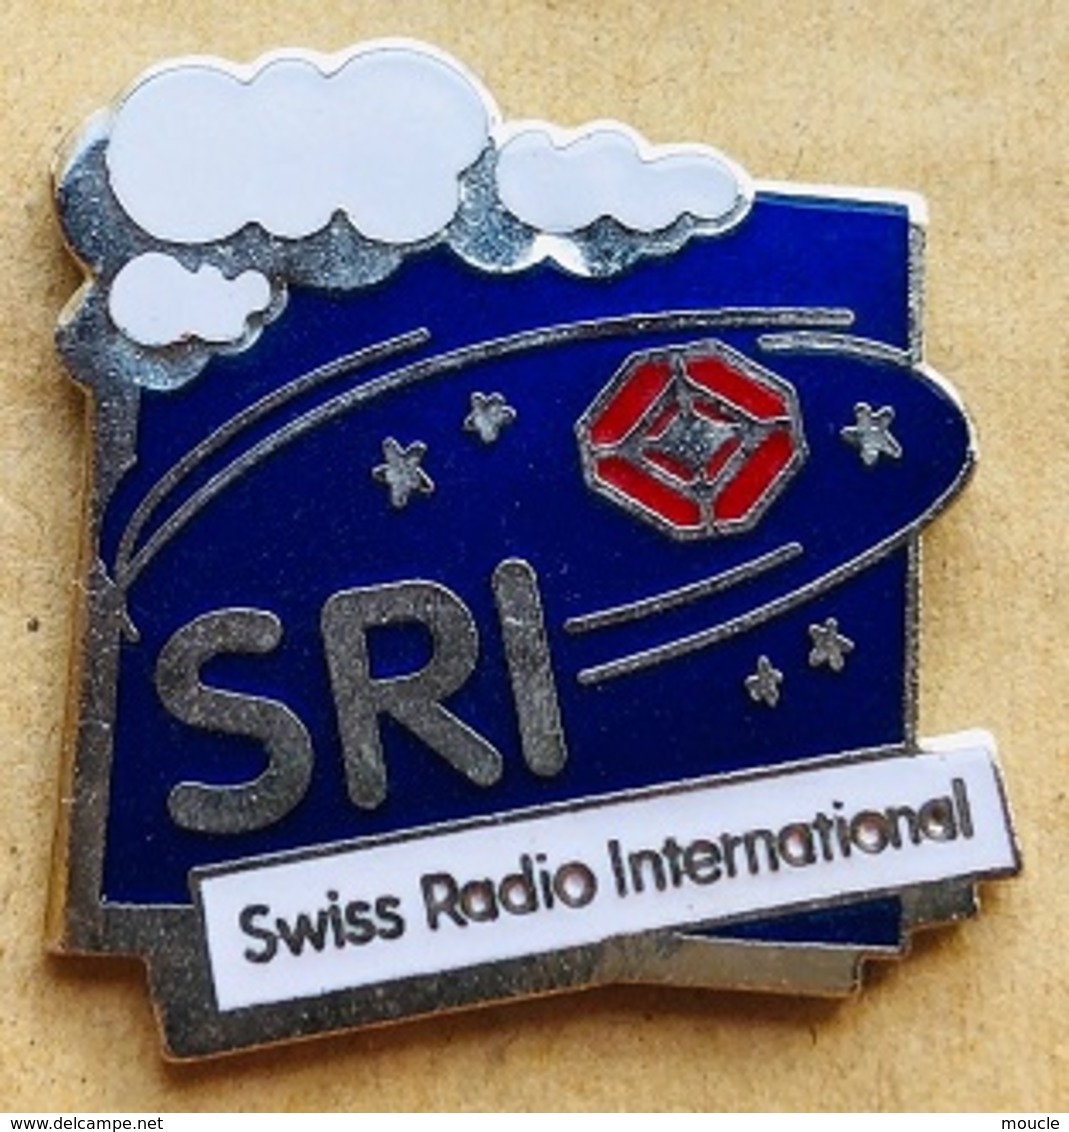 SRI - SWISS RADIO INTERNATIONAL - LOGO - NUAGE - CLOUD - ETOILES - STARS - RADIO SUISSE INTERNATIONALE   - (23) - Medias